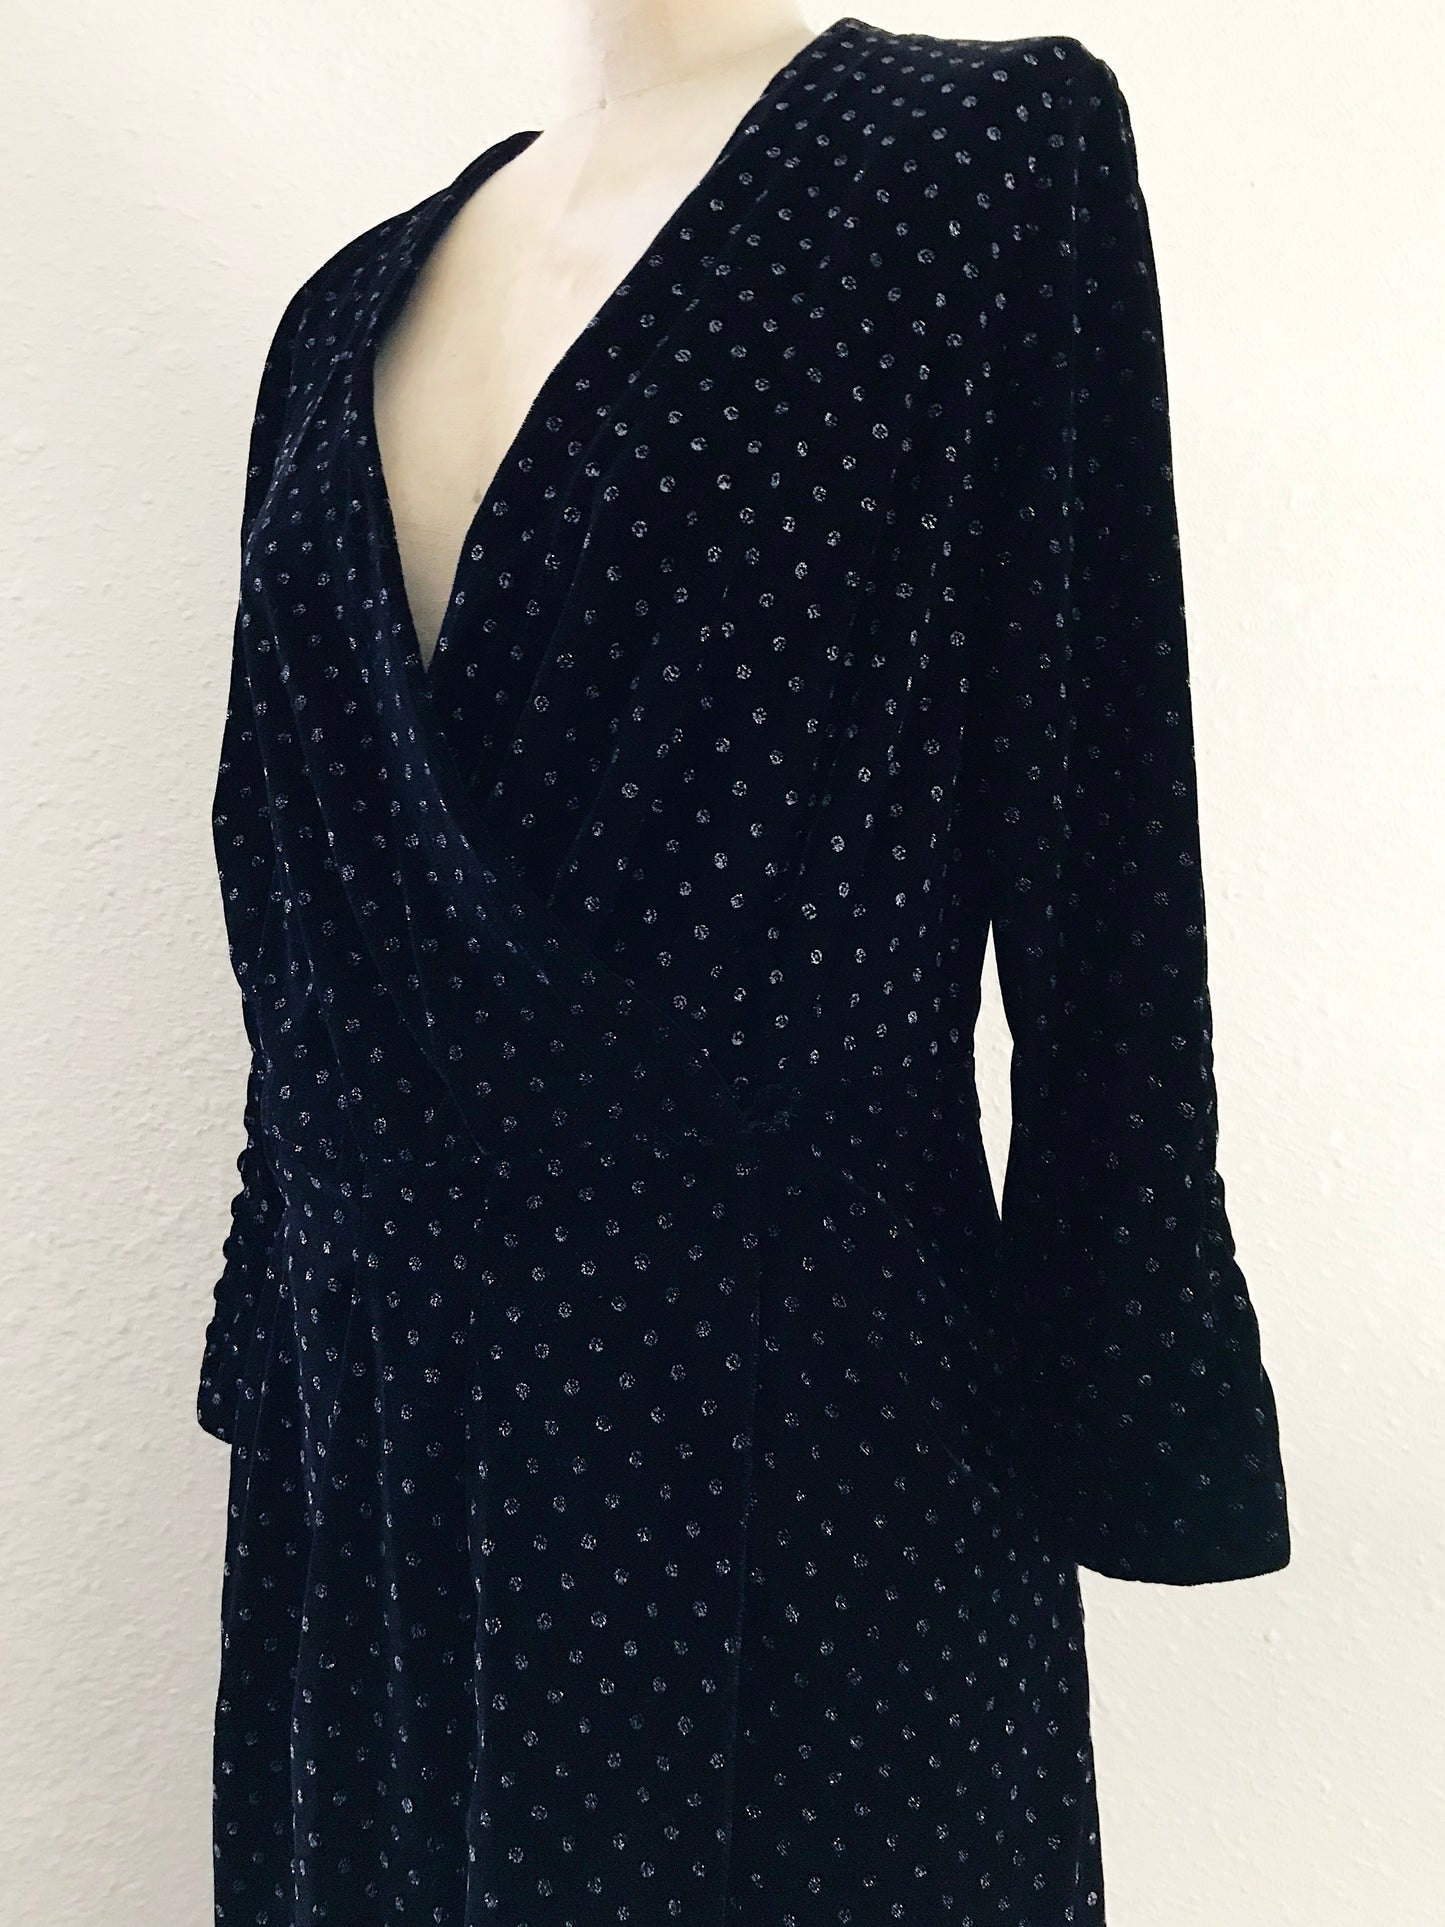 Zara Black Velvet Polka Dot Midi Dress